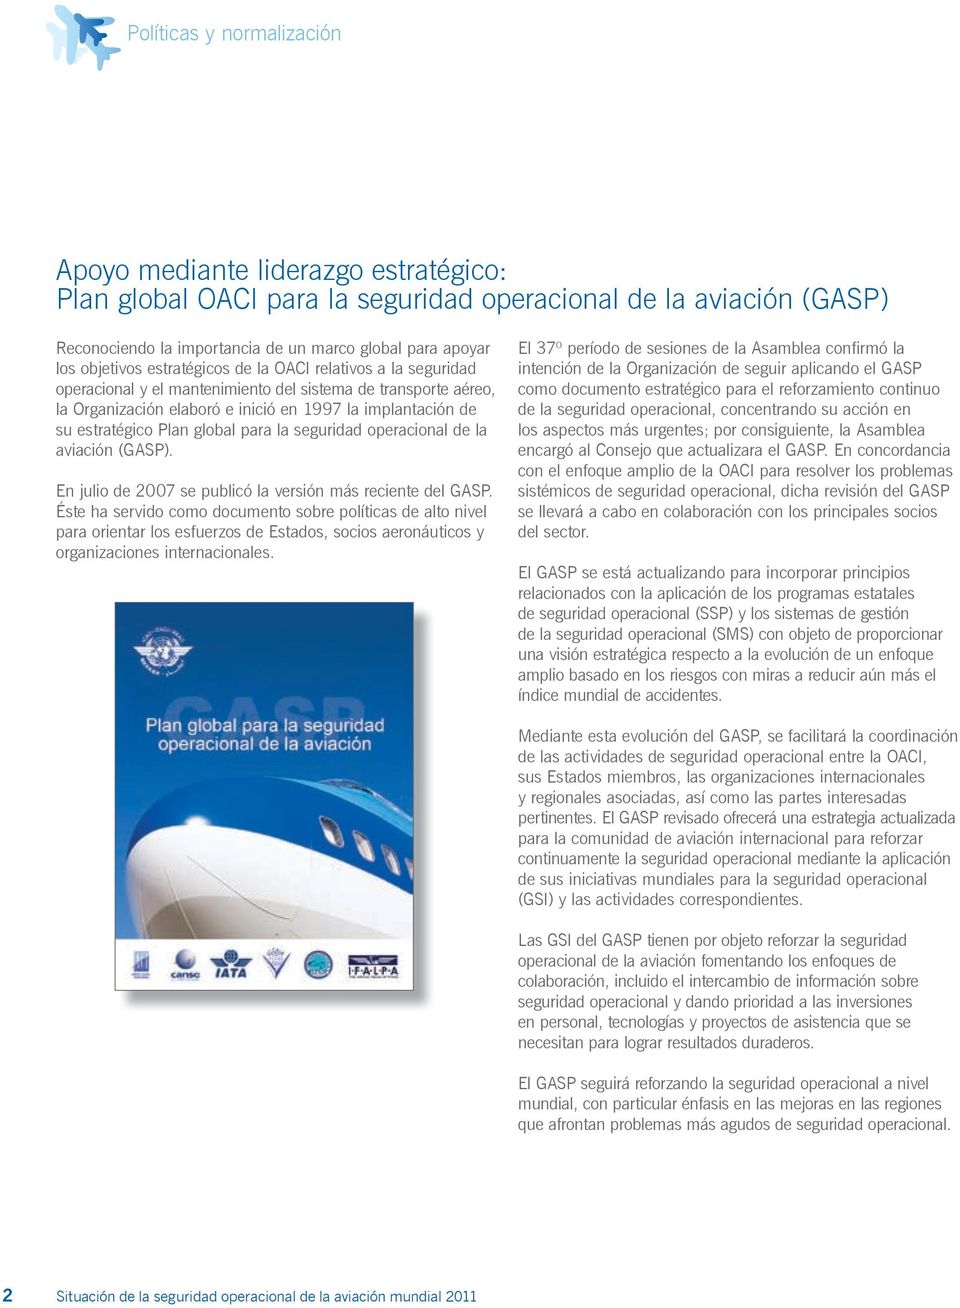 Plan global para la seguridad operacional de la aviación (GASP). En julio de 2007 se publicó la versión más reciente del GASP.